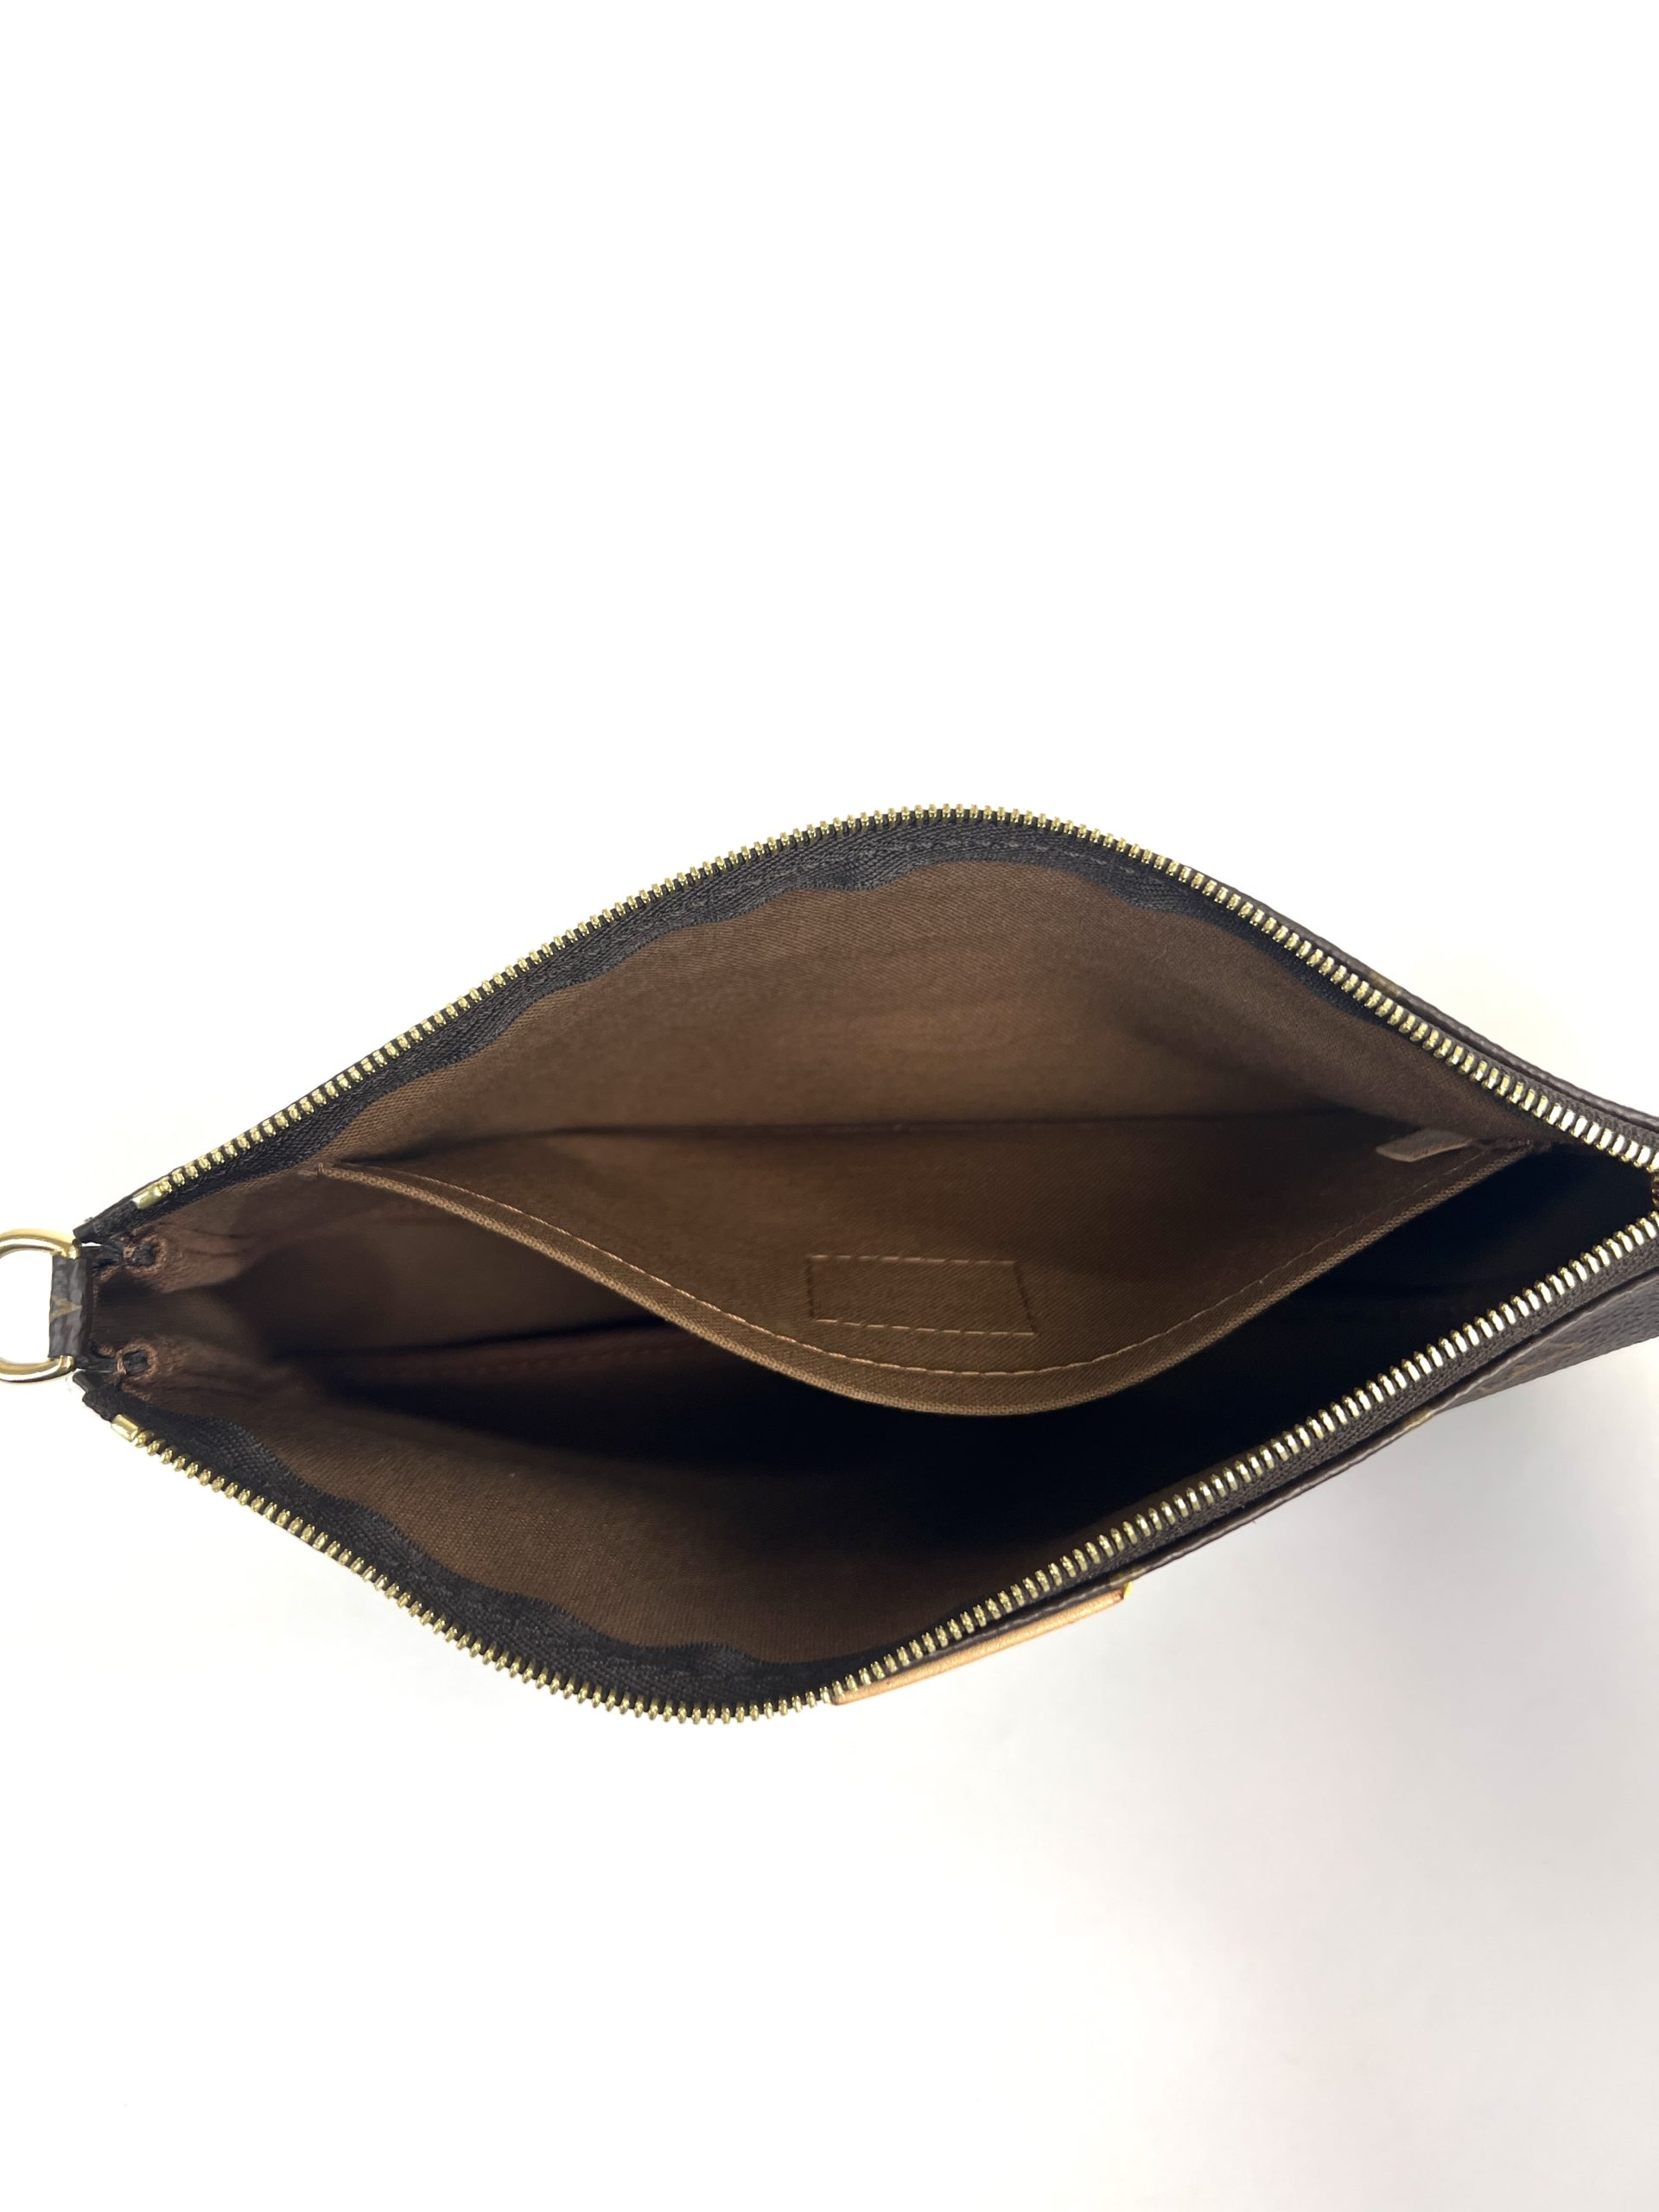 LOUIS VUITTON Epi Leather Pochette Accessories Handbag Clutch Dark Brown  Bag